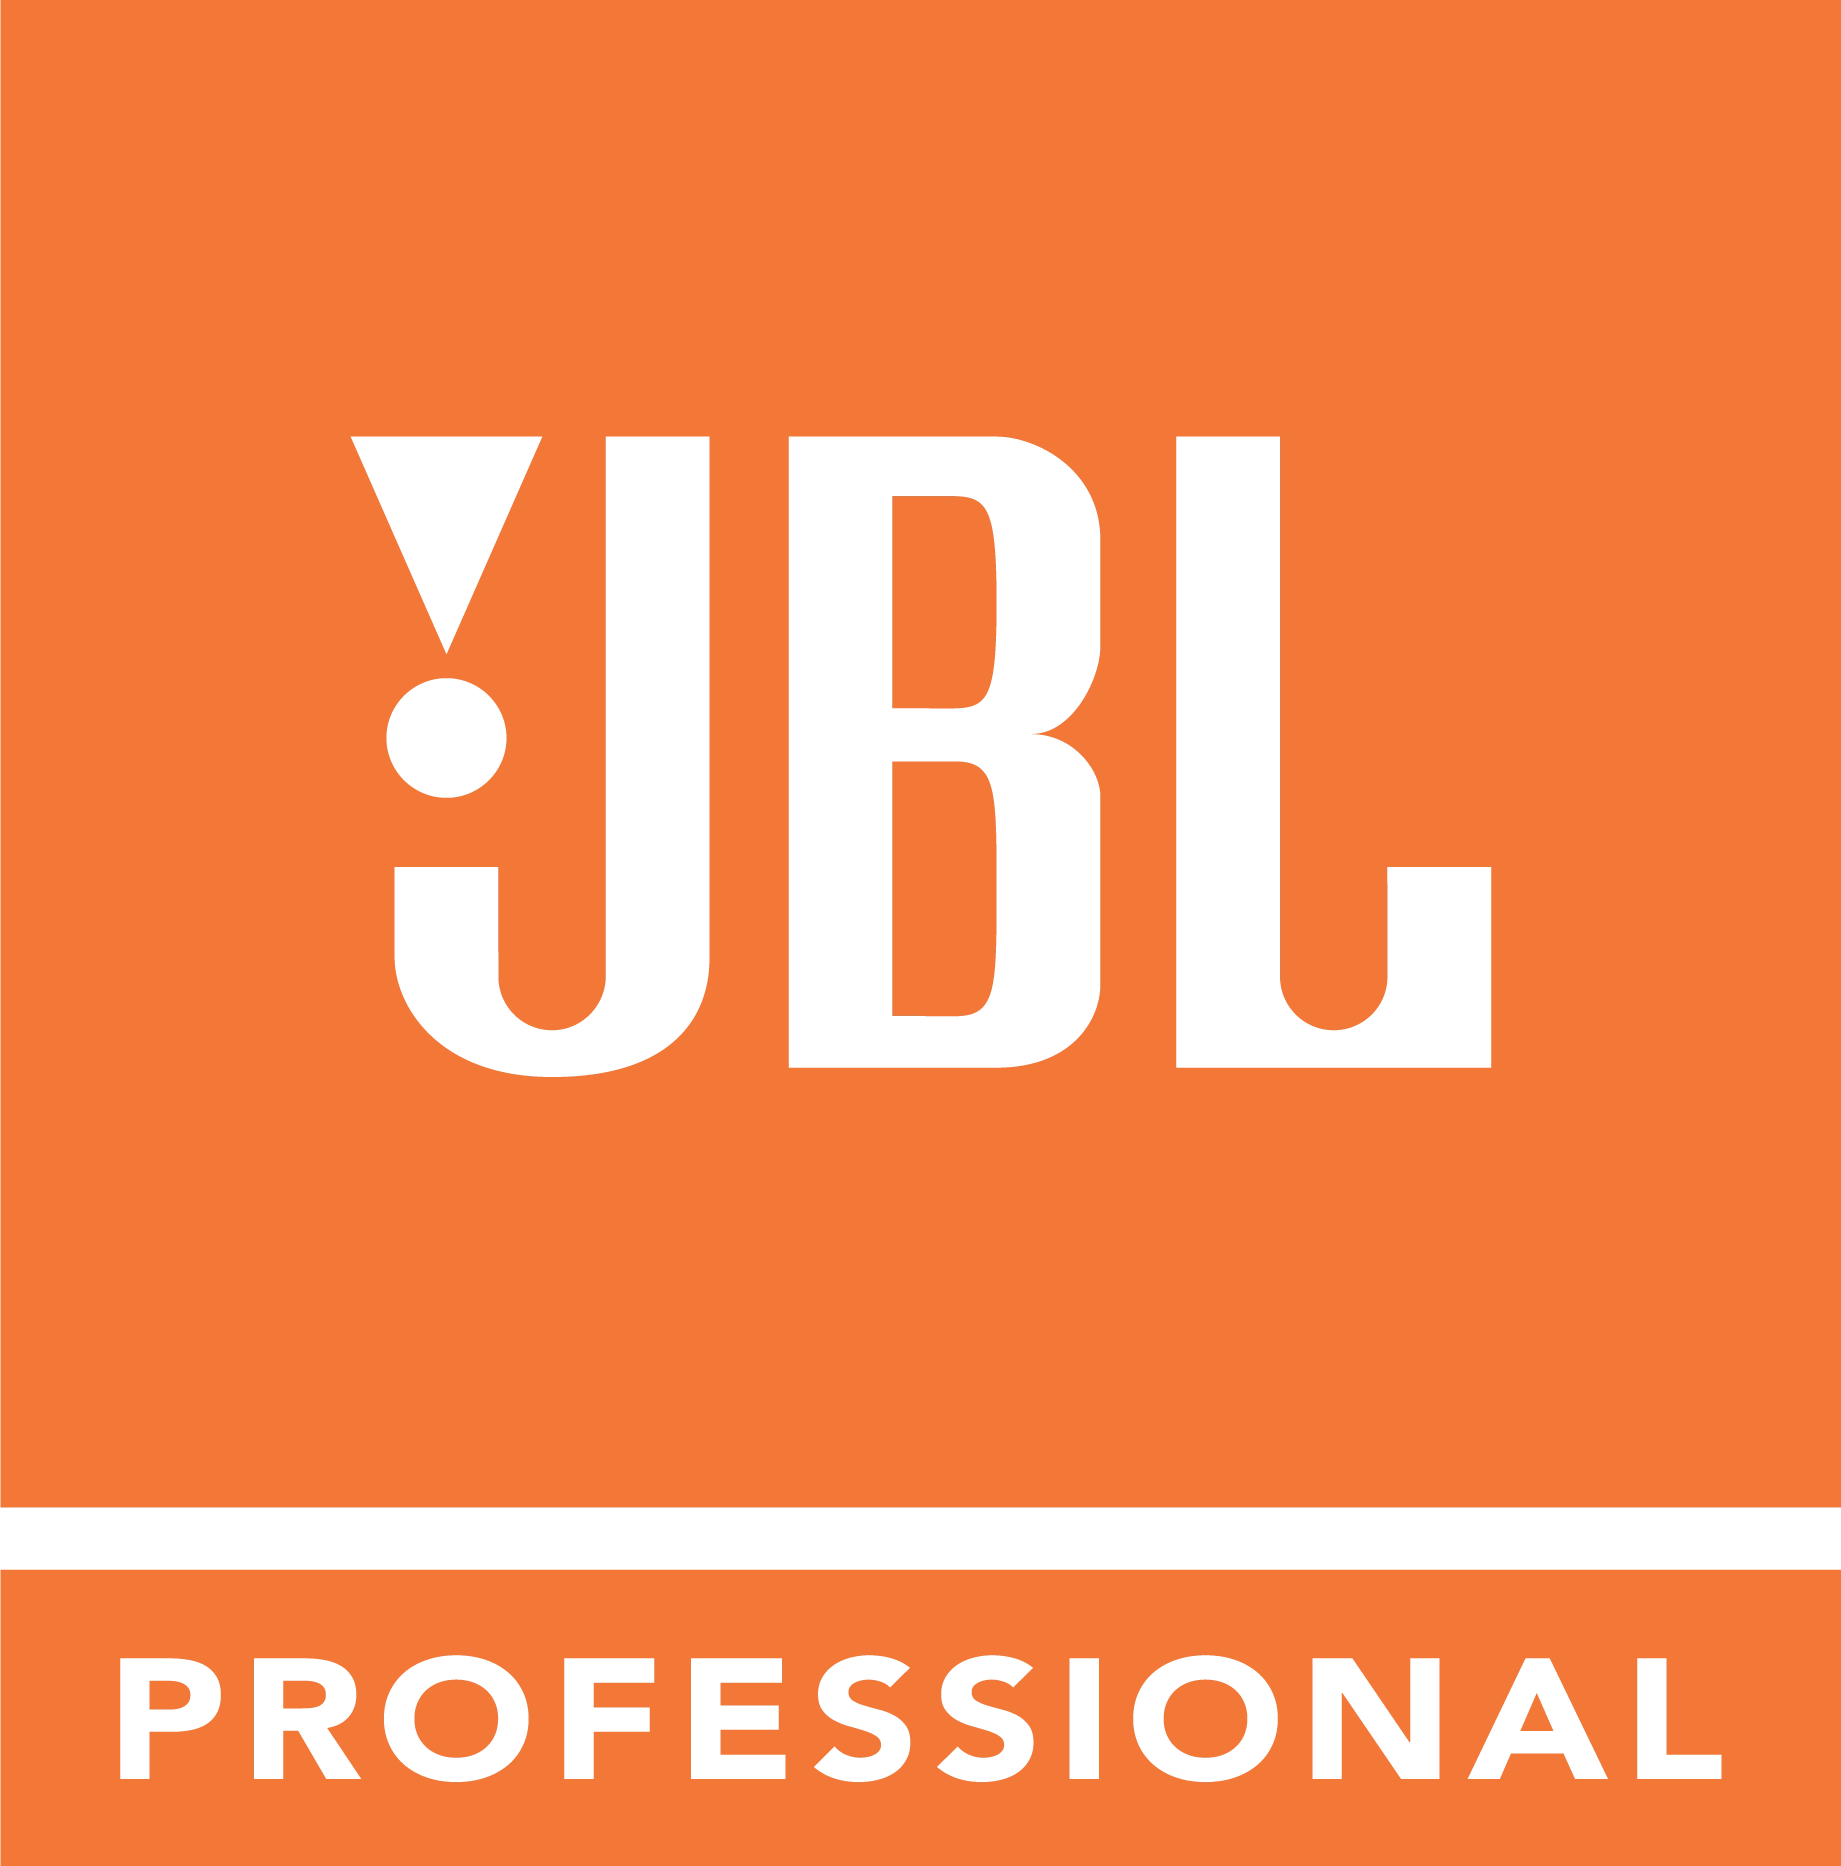 <p>Компанію JBL Professional справедливо можна назвати легендарним виробником у світі професійного звуку. Використовуючи провідну методологію та інструментарій вже протягом 74 років, вона створює найкраще за якістю та надійністю звукове обладнання і кожен свій продукт розробляє з нуля.</p>
<p>Такий підхід до справи не лише забезпечує компанії JBL тривалий успіх на ринку, але й дає блискучий результат, відображений у кожному продукті, знаний професіоналами та початківцями як &laquo;фірмовий звук JBL&raquo;. Протягом трьох поколінь професійне звукове обладнання від JBL користується незмінним попитом серед звукових спеціалістів по всьому світу.</p>
<p>Українсько-Британське спільне підприємство Комора є офіційним дистриб&rsquo;ютором компанії JBL Professional в Україні. Ми пропонуємо широкий асортимент професійного звукового обладнання, що включає універсальні, інсталяційні, турові акустичні системи, студійну акустику й системи для кінотеатрів та караоке.</p>
<p>Наші спеціалісти допомагають підібрати оптимальний звуковий комплект у відповідності до потреб замовника.</p>